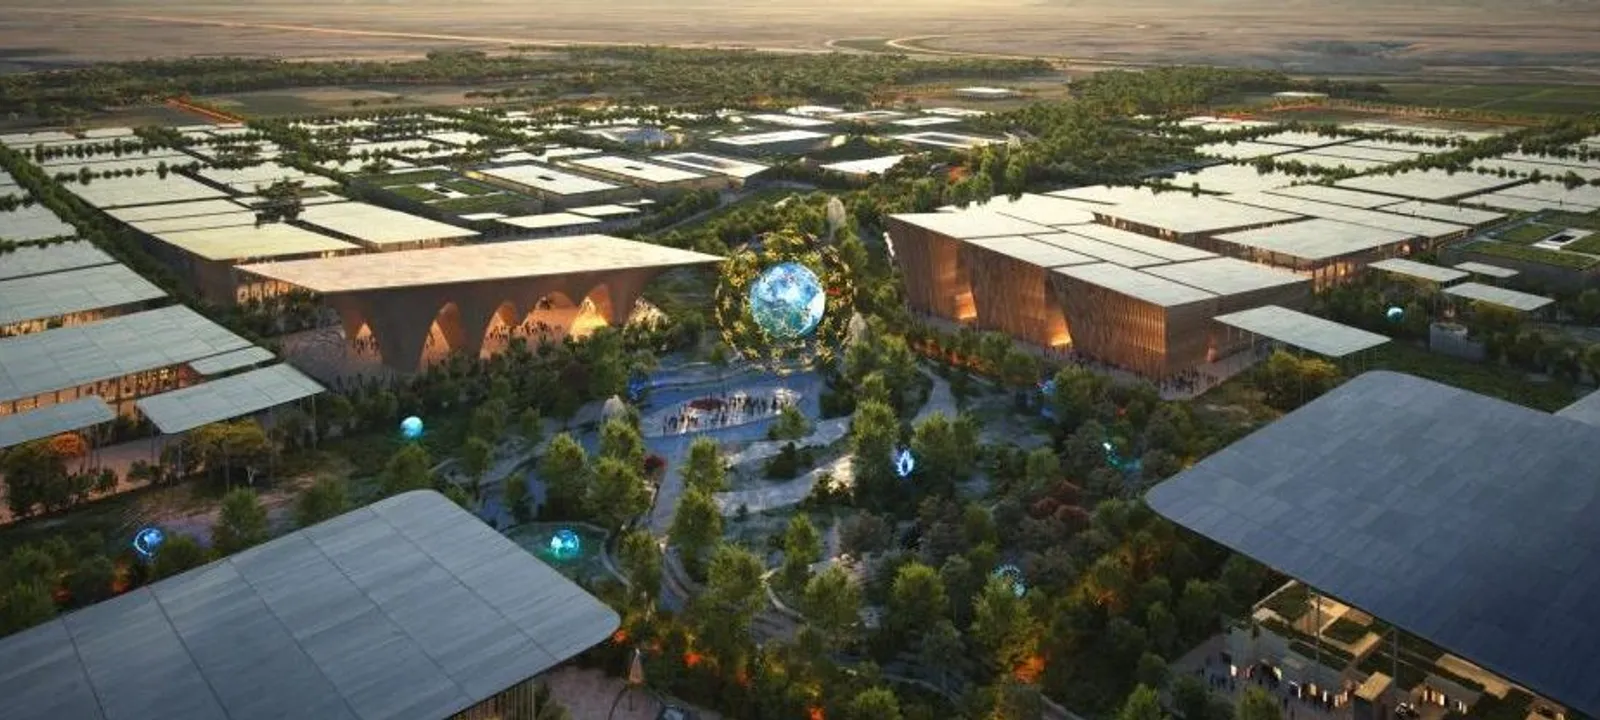 معرض إكسبو الدولي في الرياض تتويج لرؤية المملكة 2030